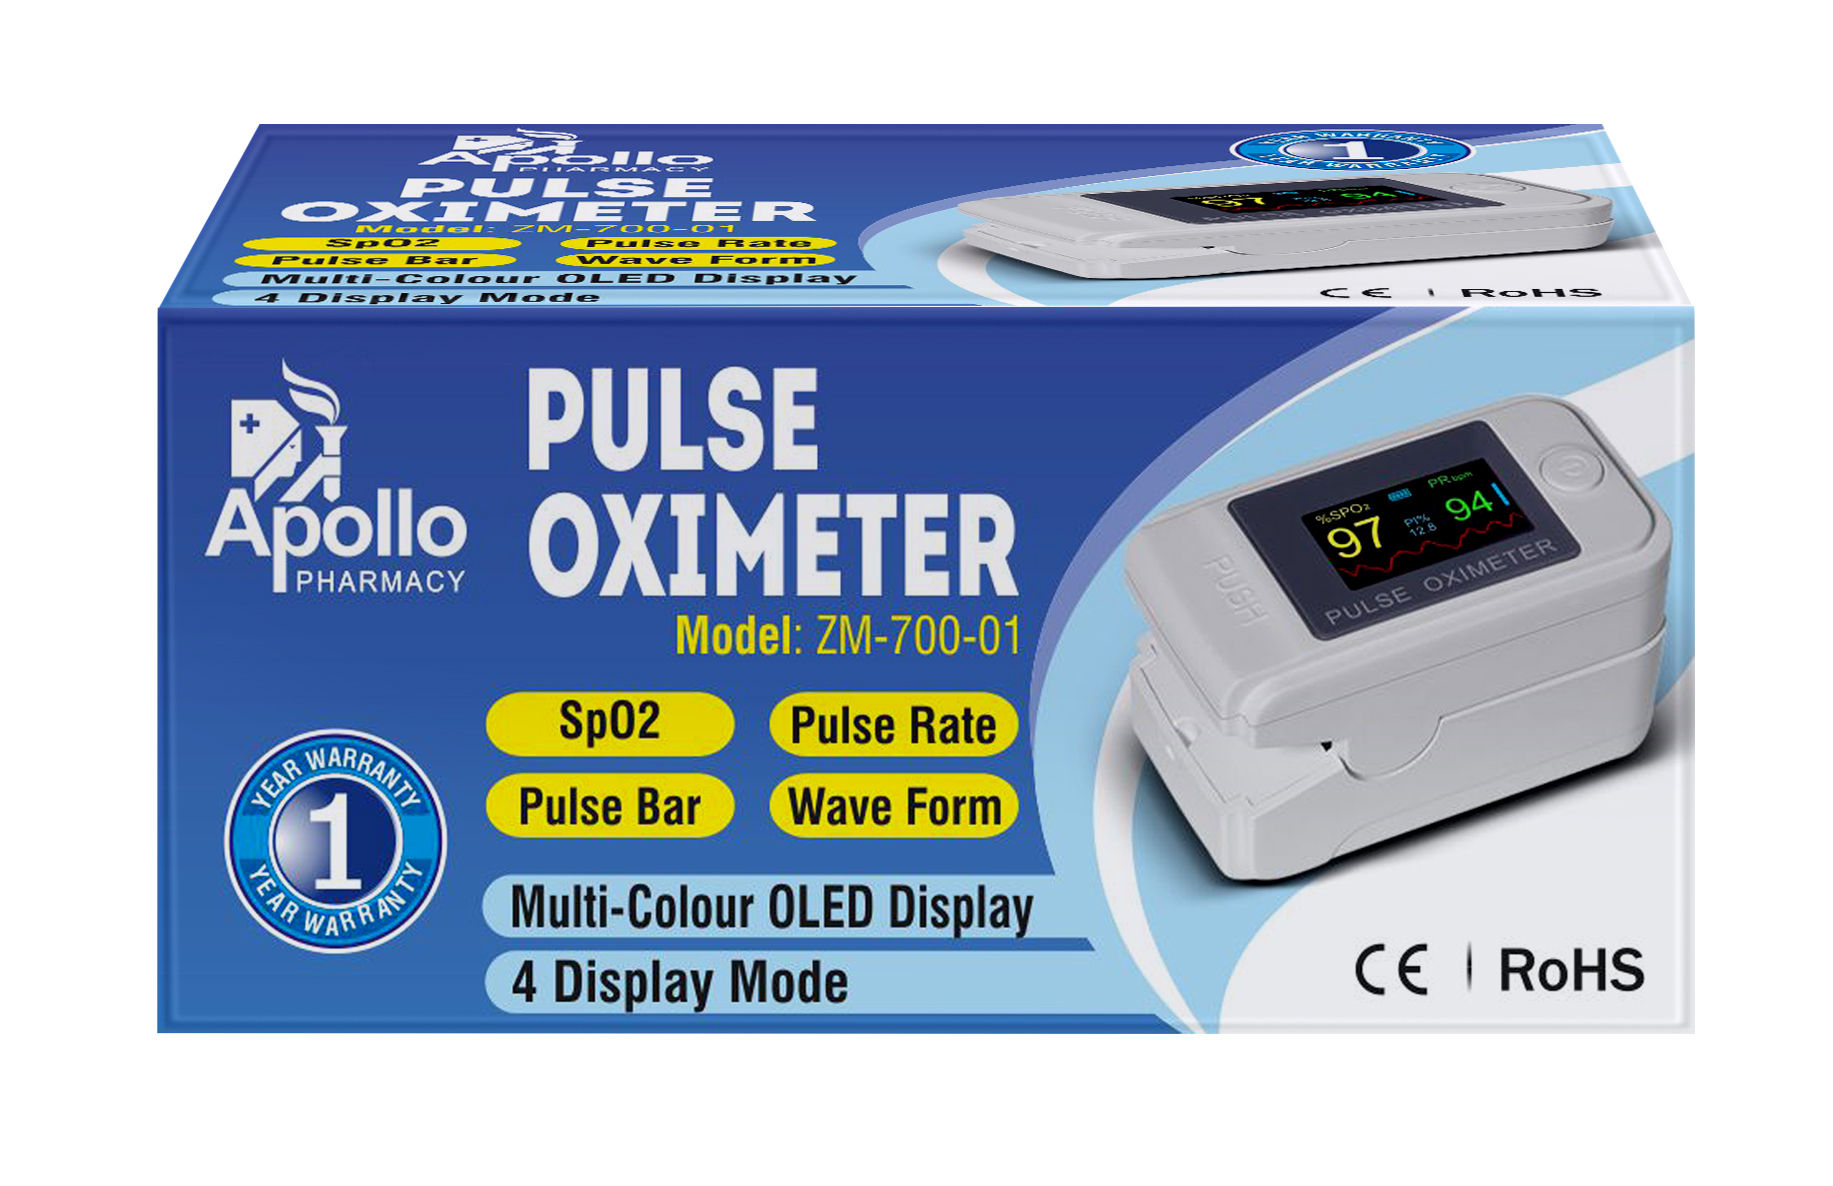 Buy Apollo Pharmacy Pulse Oximeter ZM-700-01, 1 Count Online